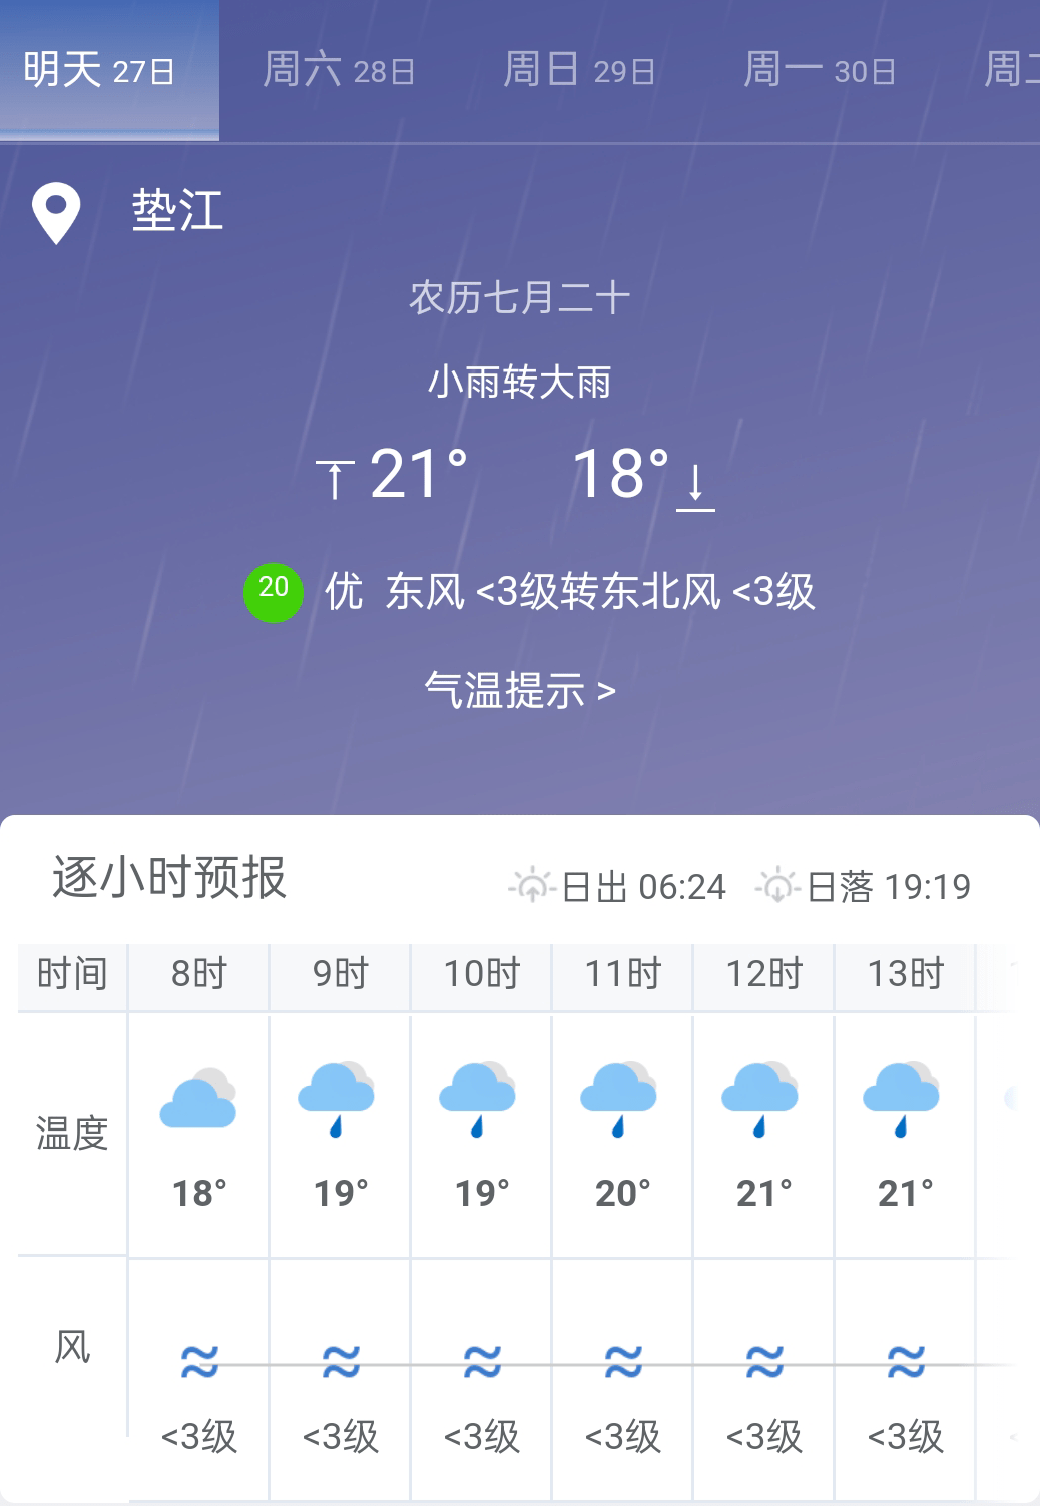 重庆垫江明日天气预报 明天的垫江多有降雨,请带好雨具!